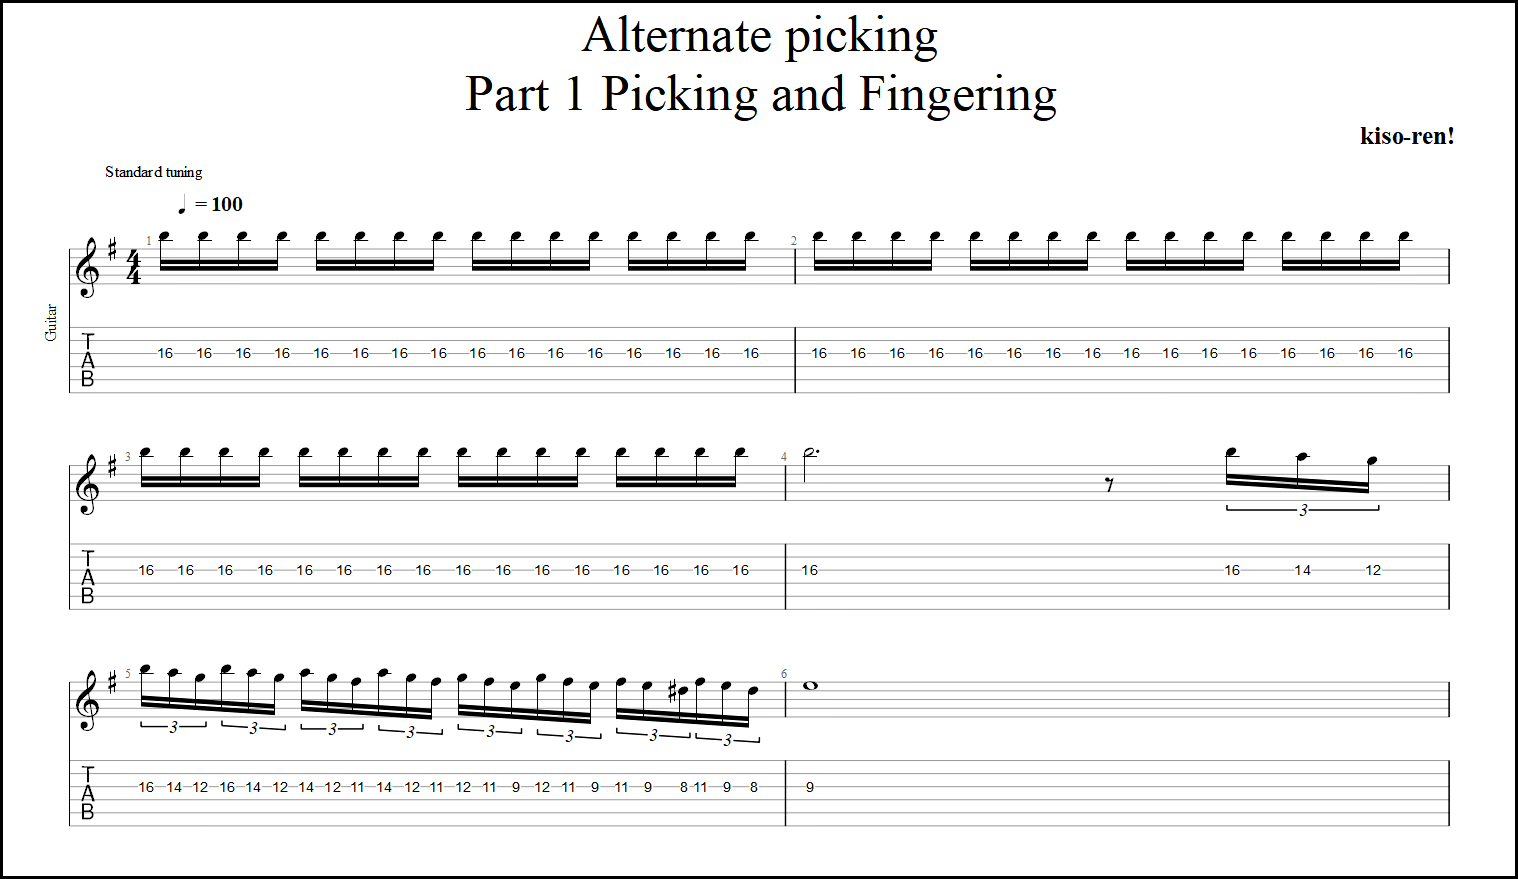 【TAB】Alternate picking Guitar Lesson ギターオルタネイトピッキング練習【Picking･Fingering ピッキング･フィンガリング】